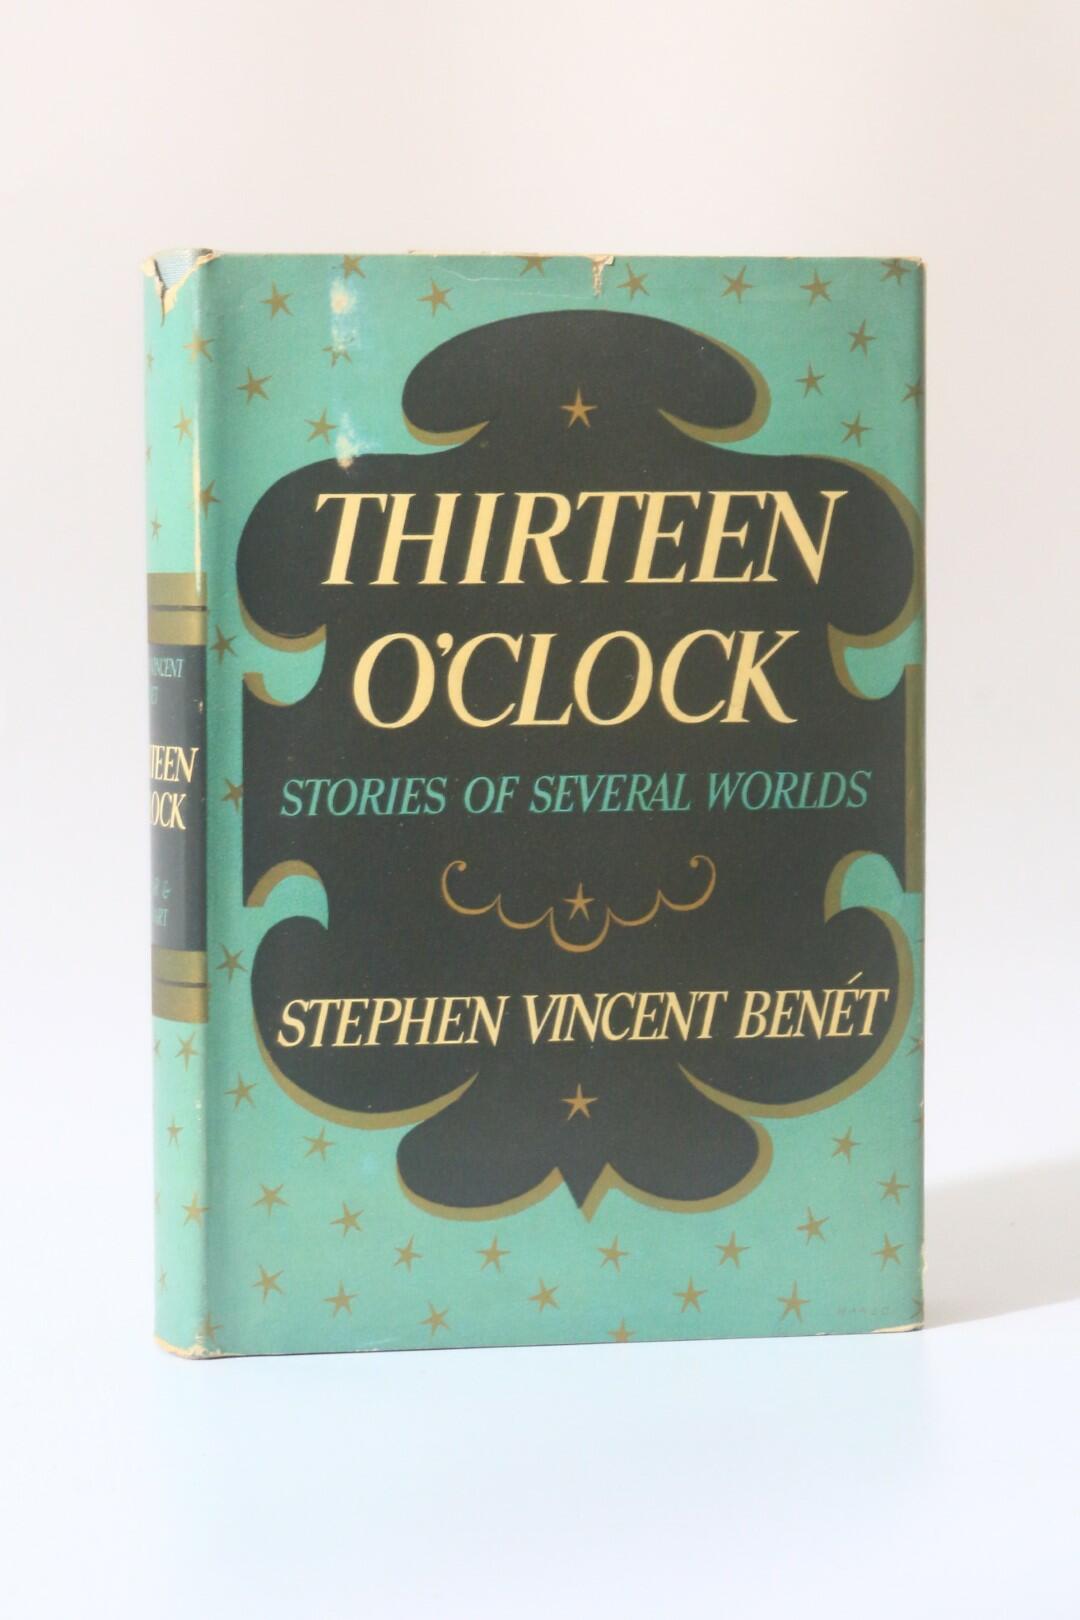 Stephen Vincent Benet - Thirteen O'Clock: Stories of Several Worlds - Farrar and Rinehart, 1937, First Edition.